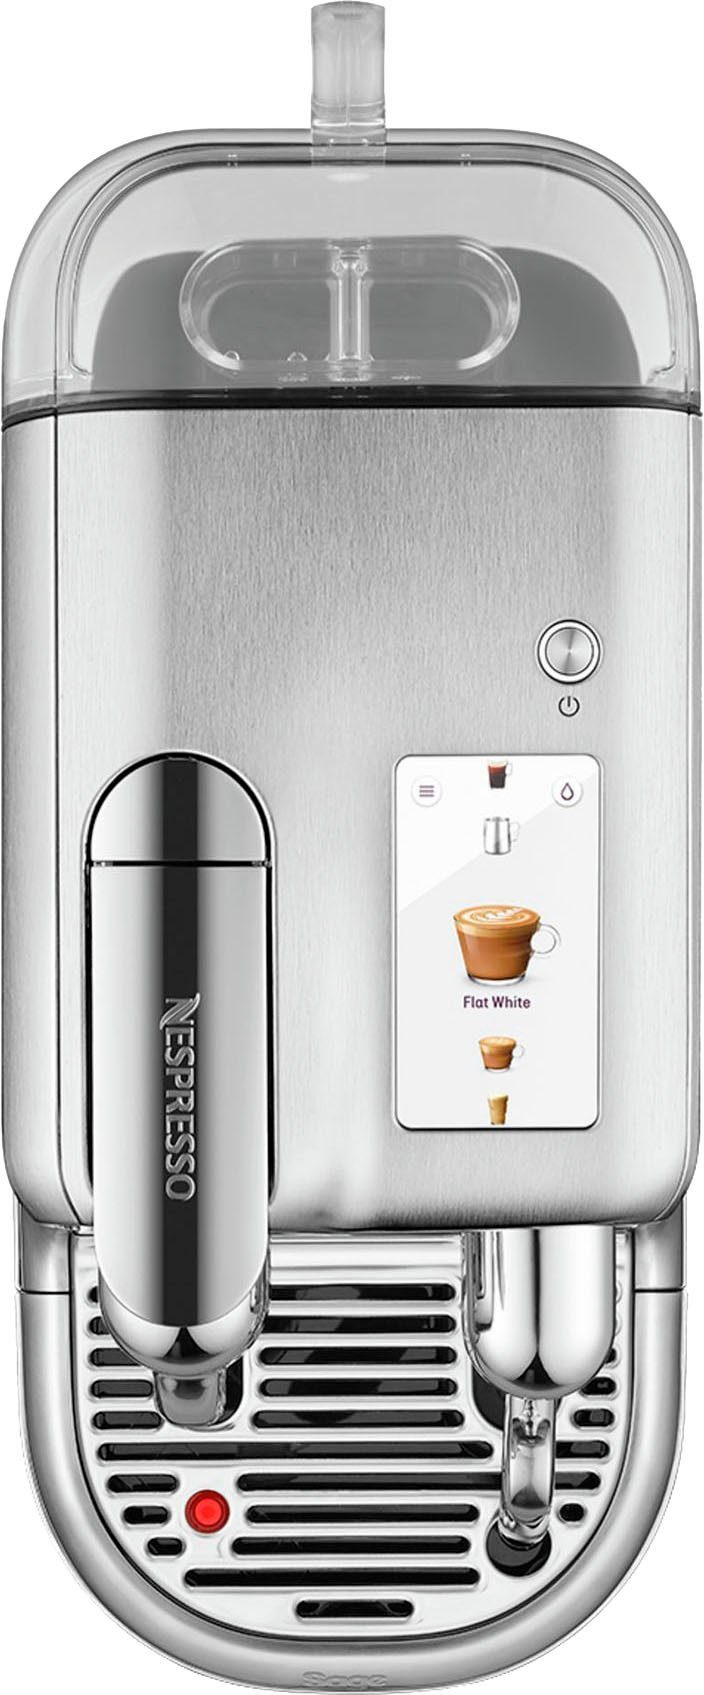 Nespresso Kapselmaschine Pro mit mit Kapseln 14 inkl. Willkommenspaket Creatista Edelstahl-Milchkanne, SNE900